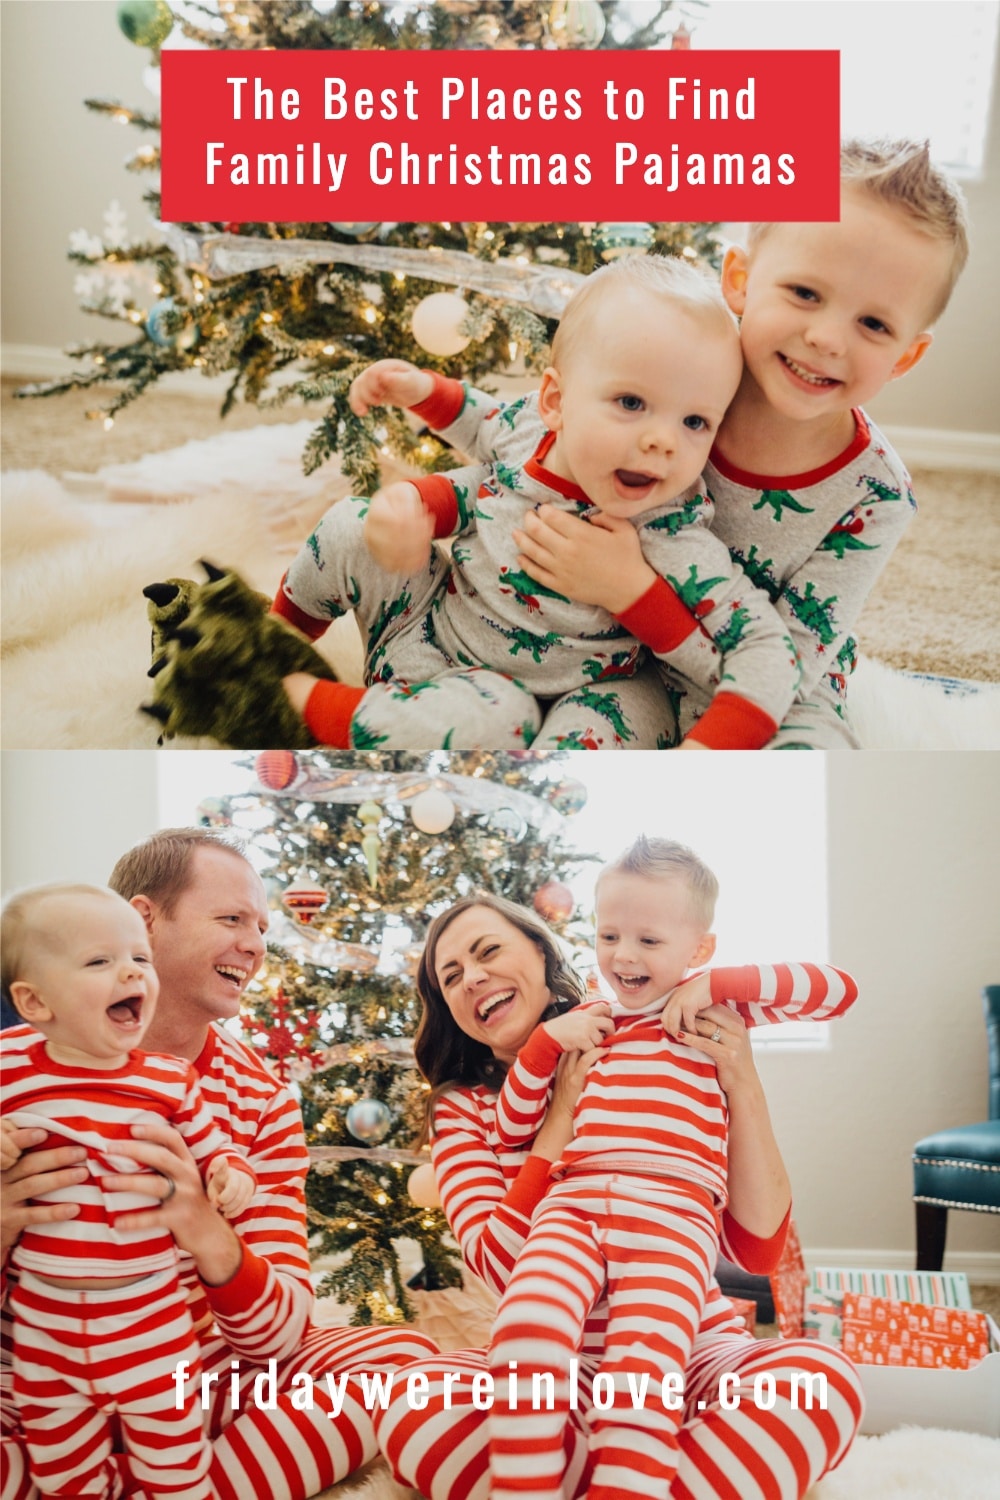 Family Christmas Pajamas - A Roundup of The Best Holiday Pajamas